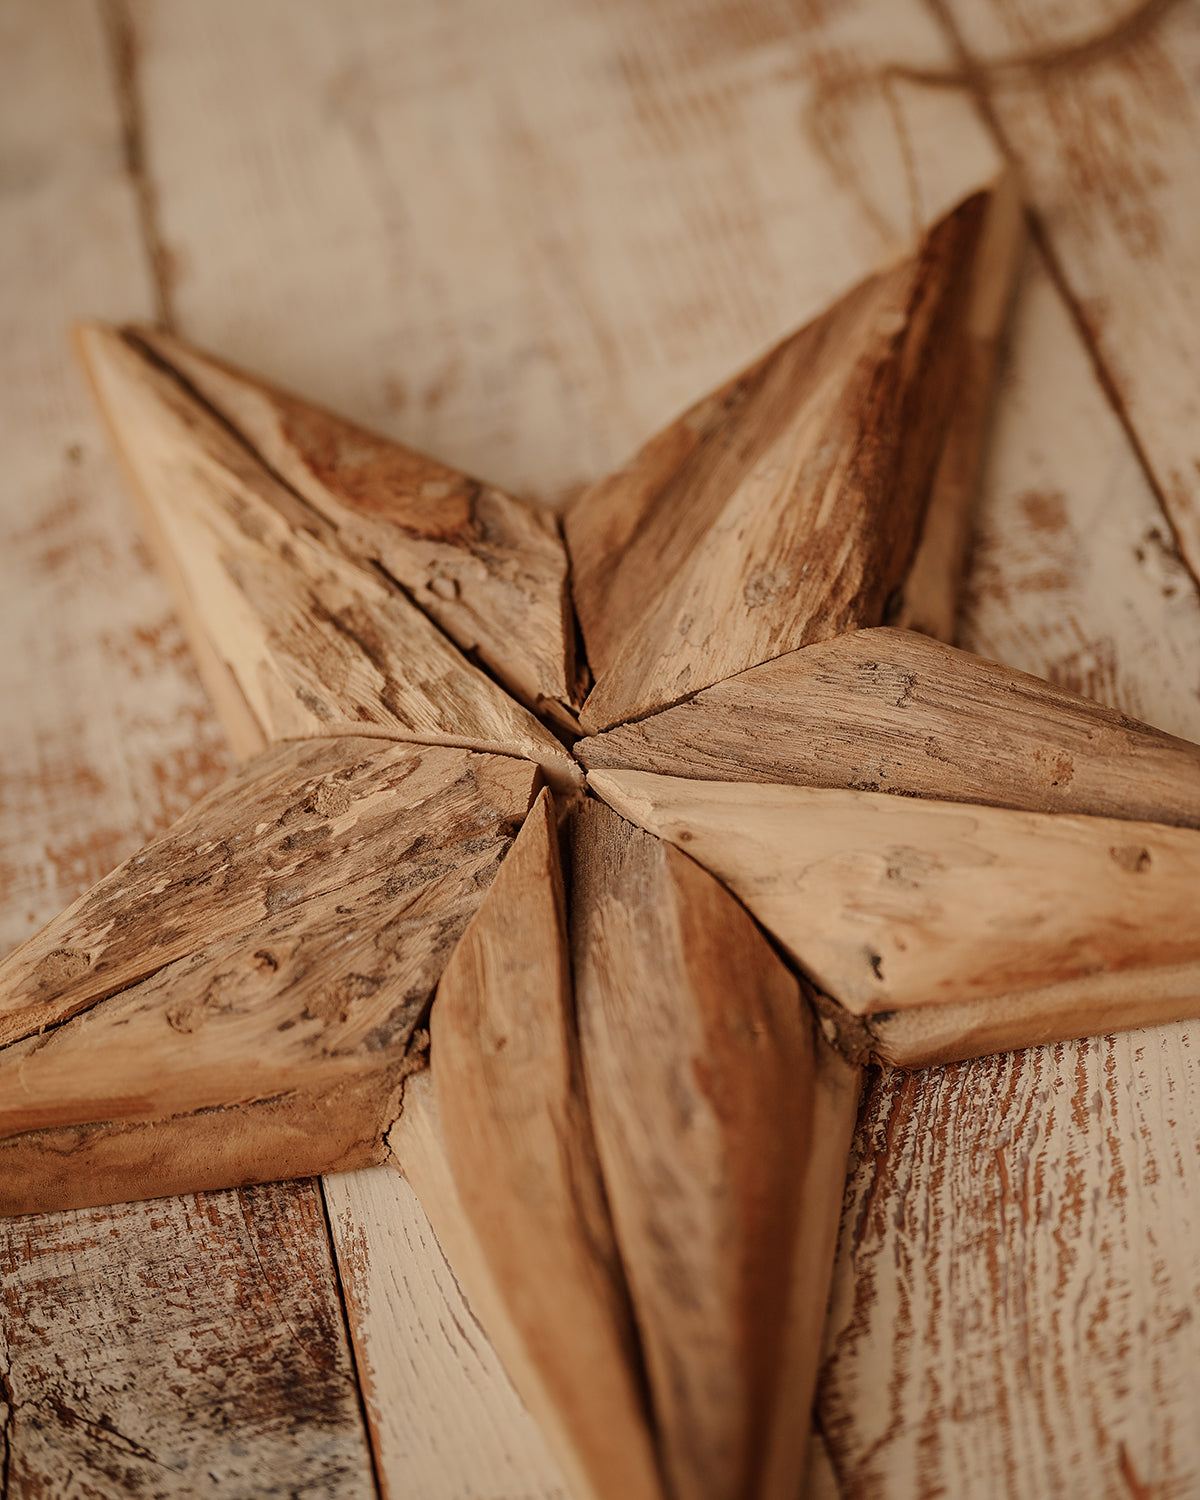 Bethlehem - Large recycled wood star